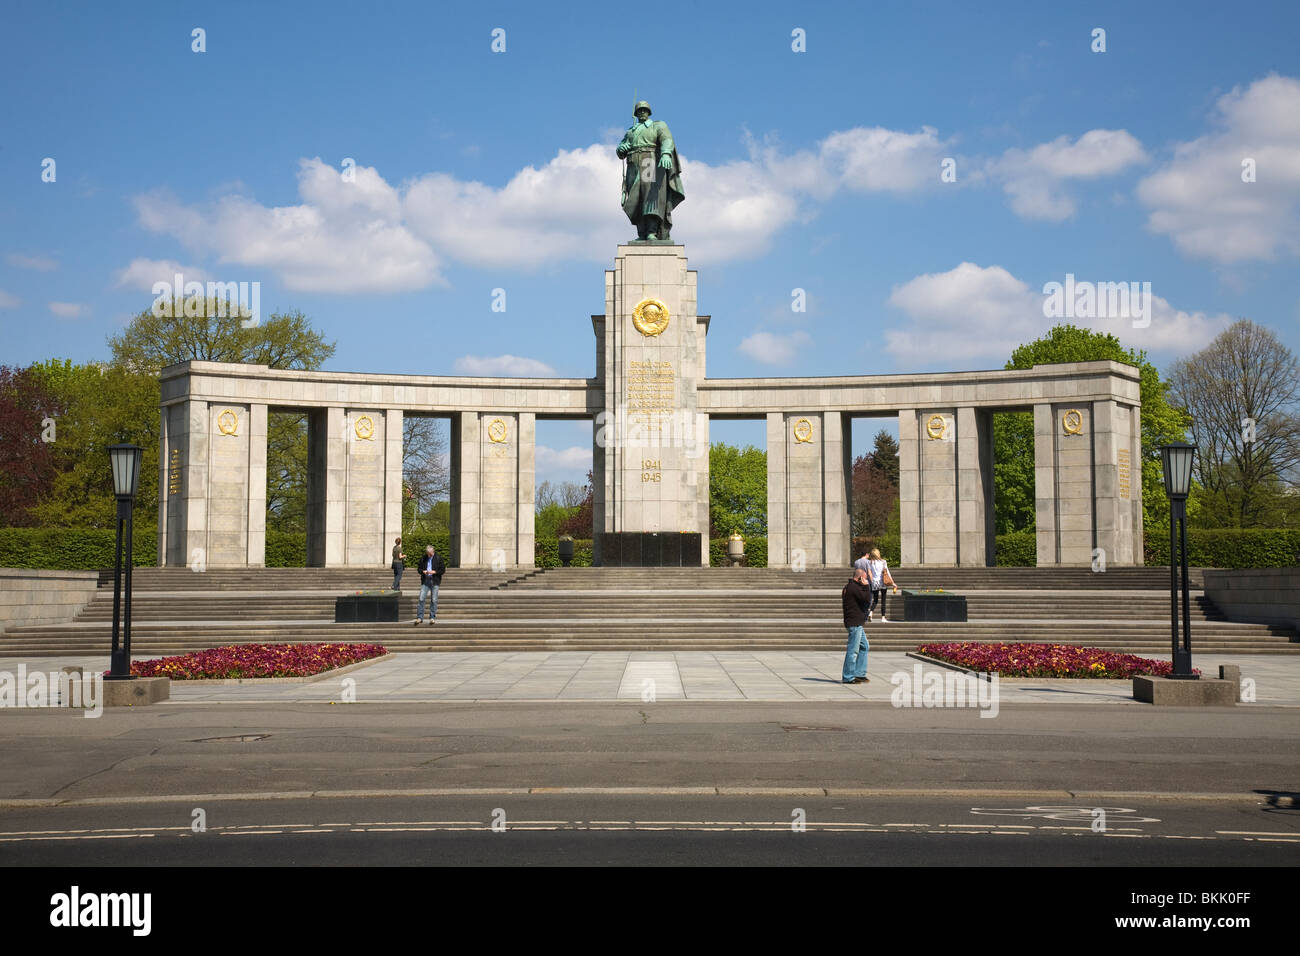 Soviet Memorial, Tiergarten, Berlin, Germany Stock Photo